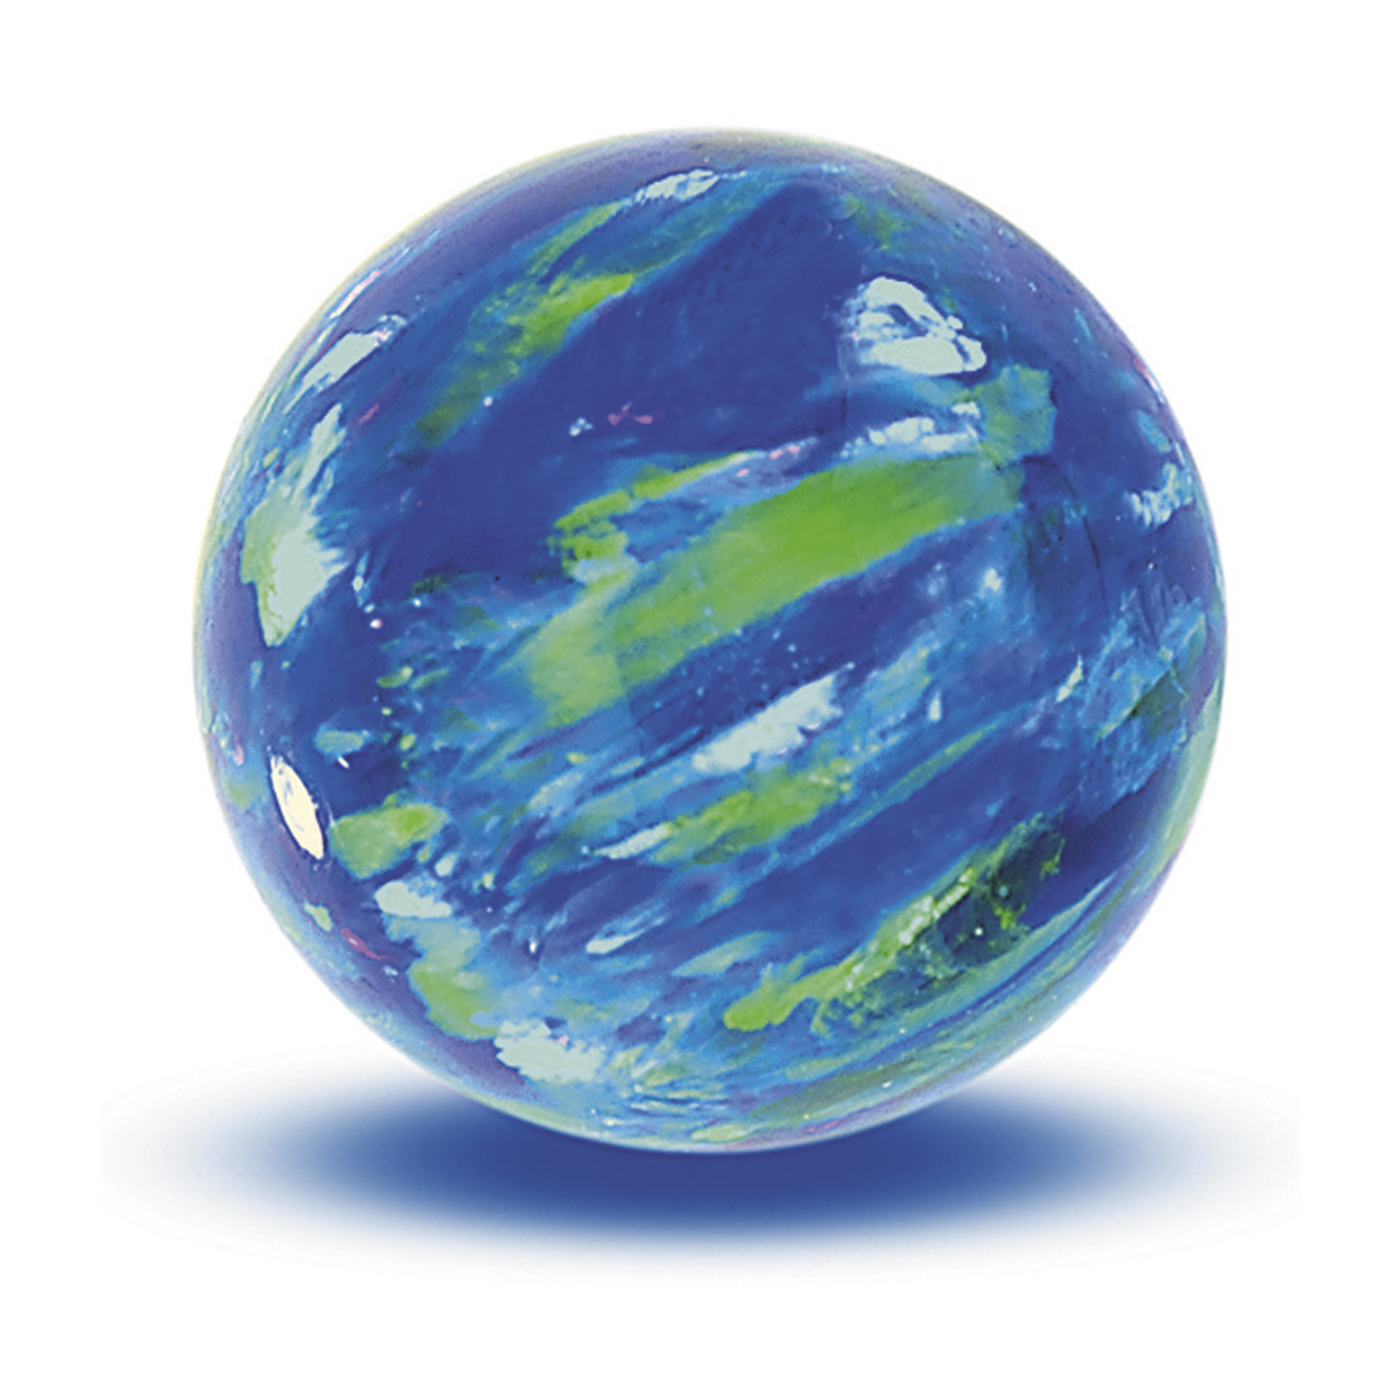 Opal Imitation Ball, Cyan, ø 6 mm, Spot Drilled - 1 piece